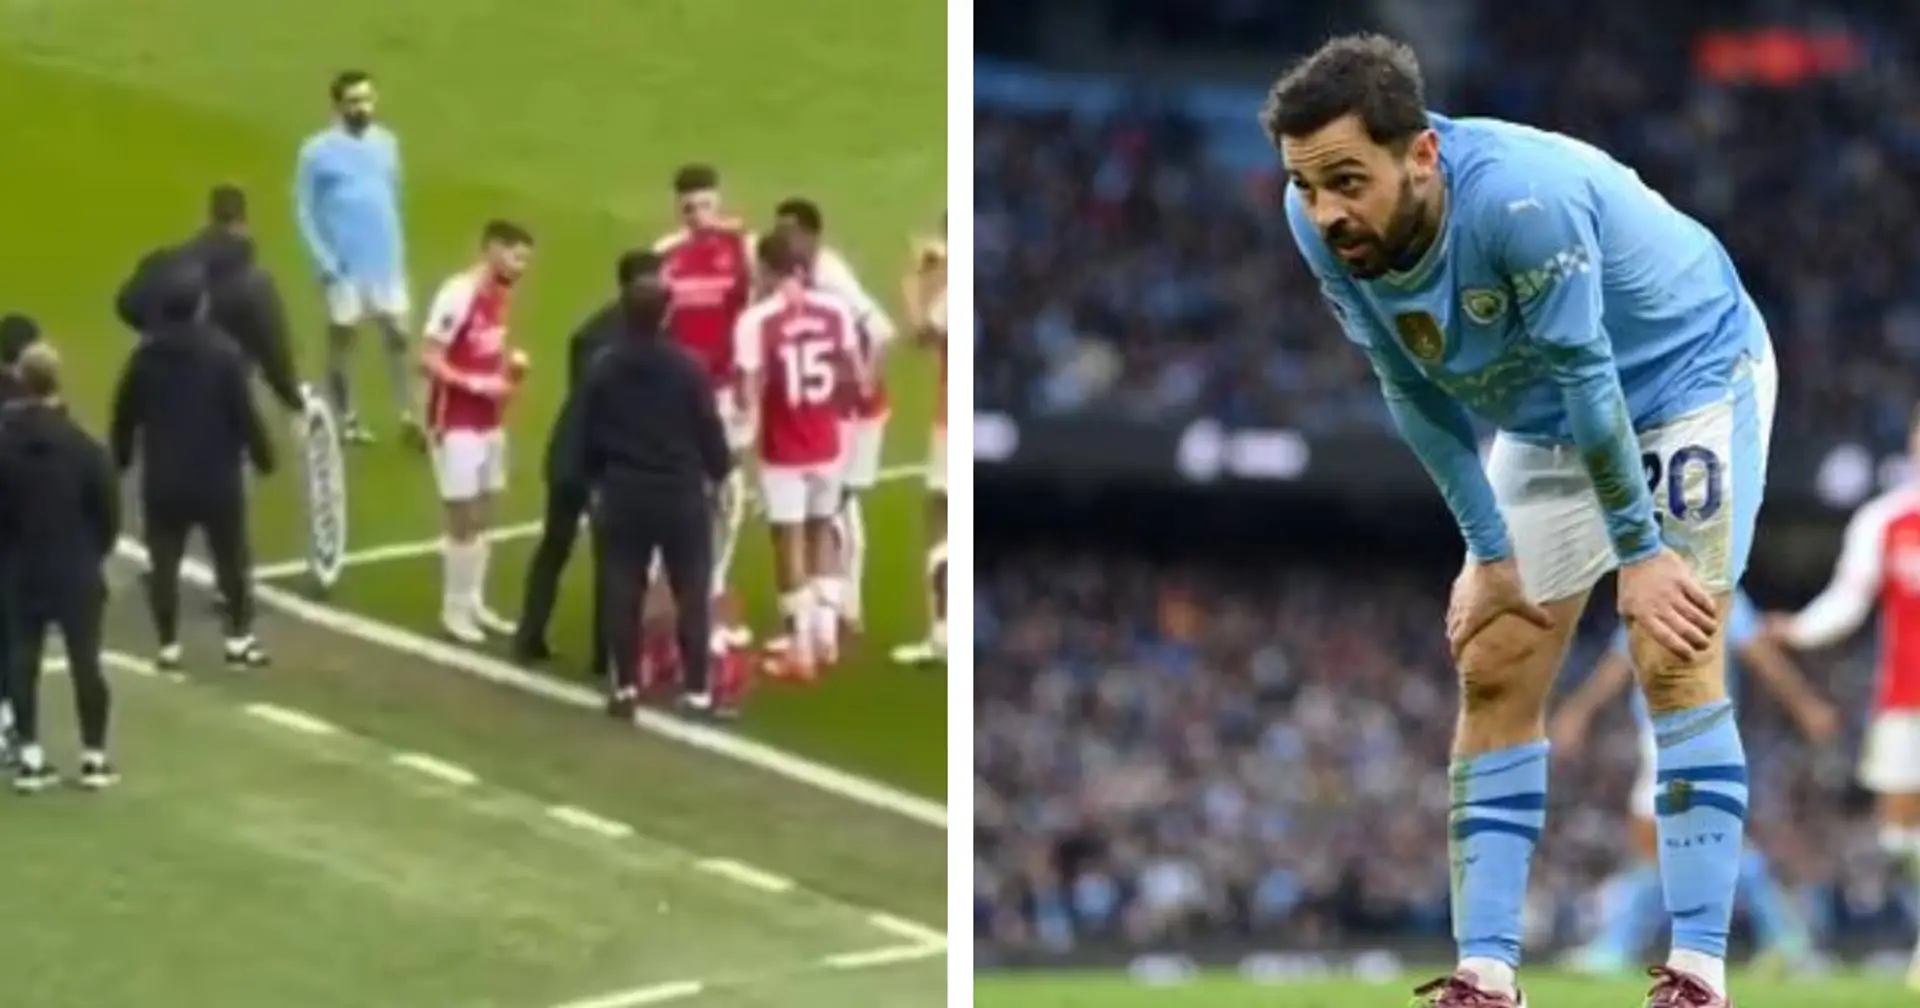 Bernardo Silva hilariously filmed 'eavesdropping' on Arsenal tactics